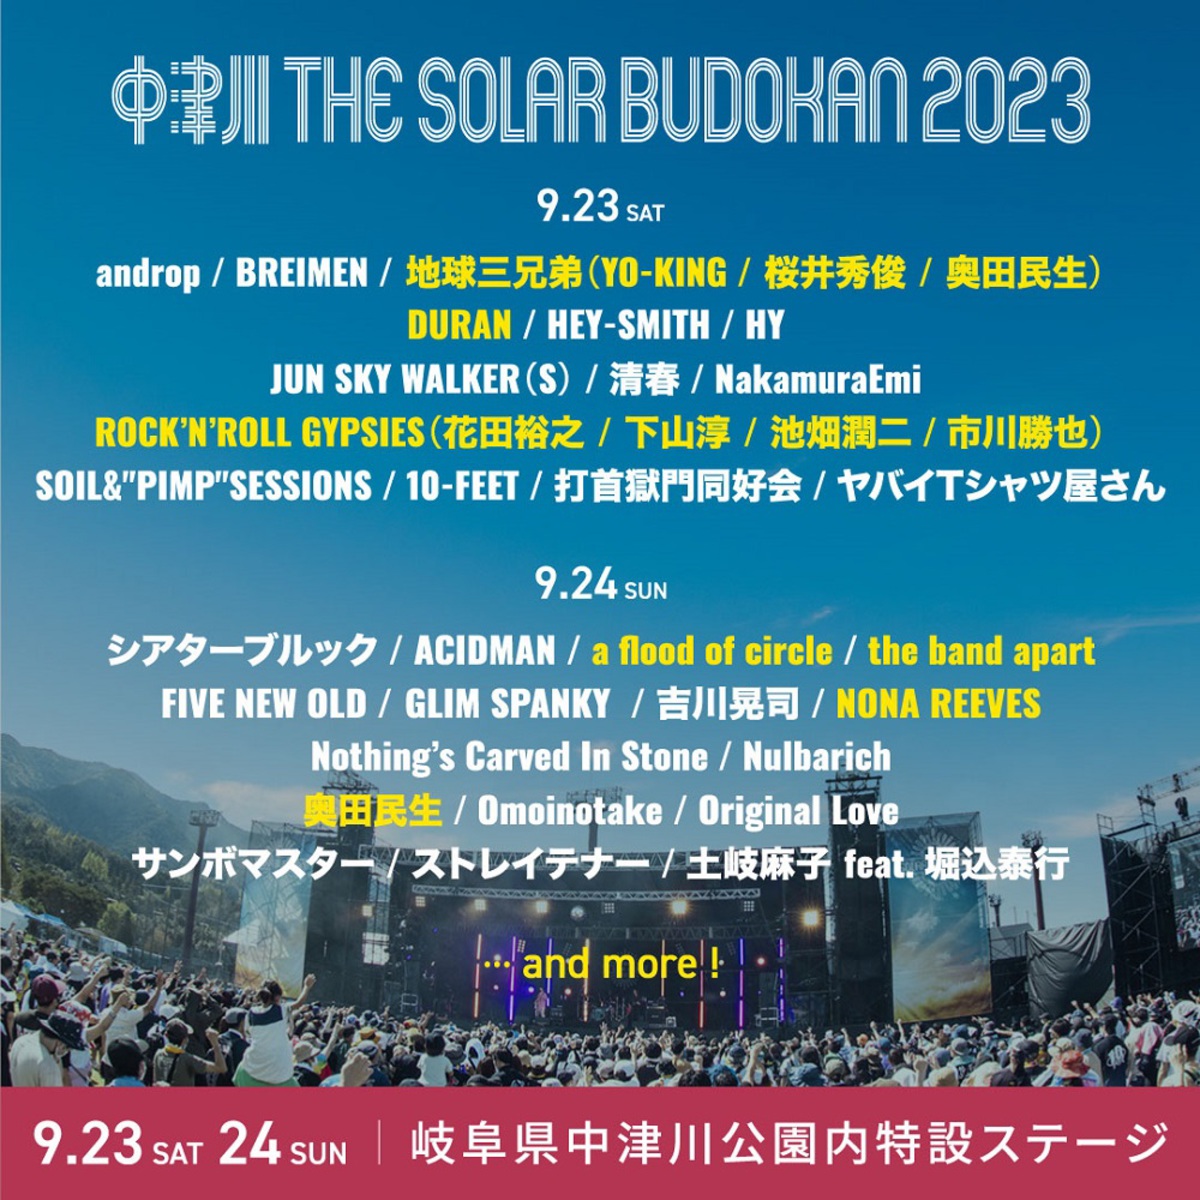 中津川THE SOLAR BUDOKAN 2023 23(土) 1日入場券